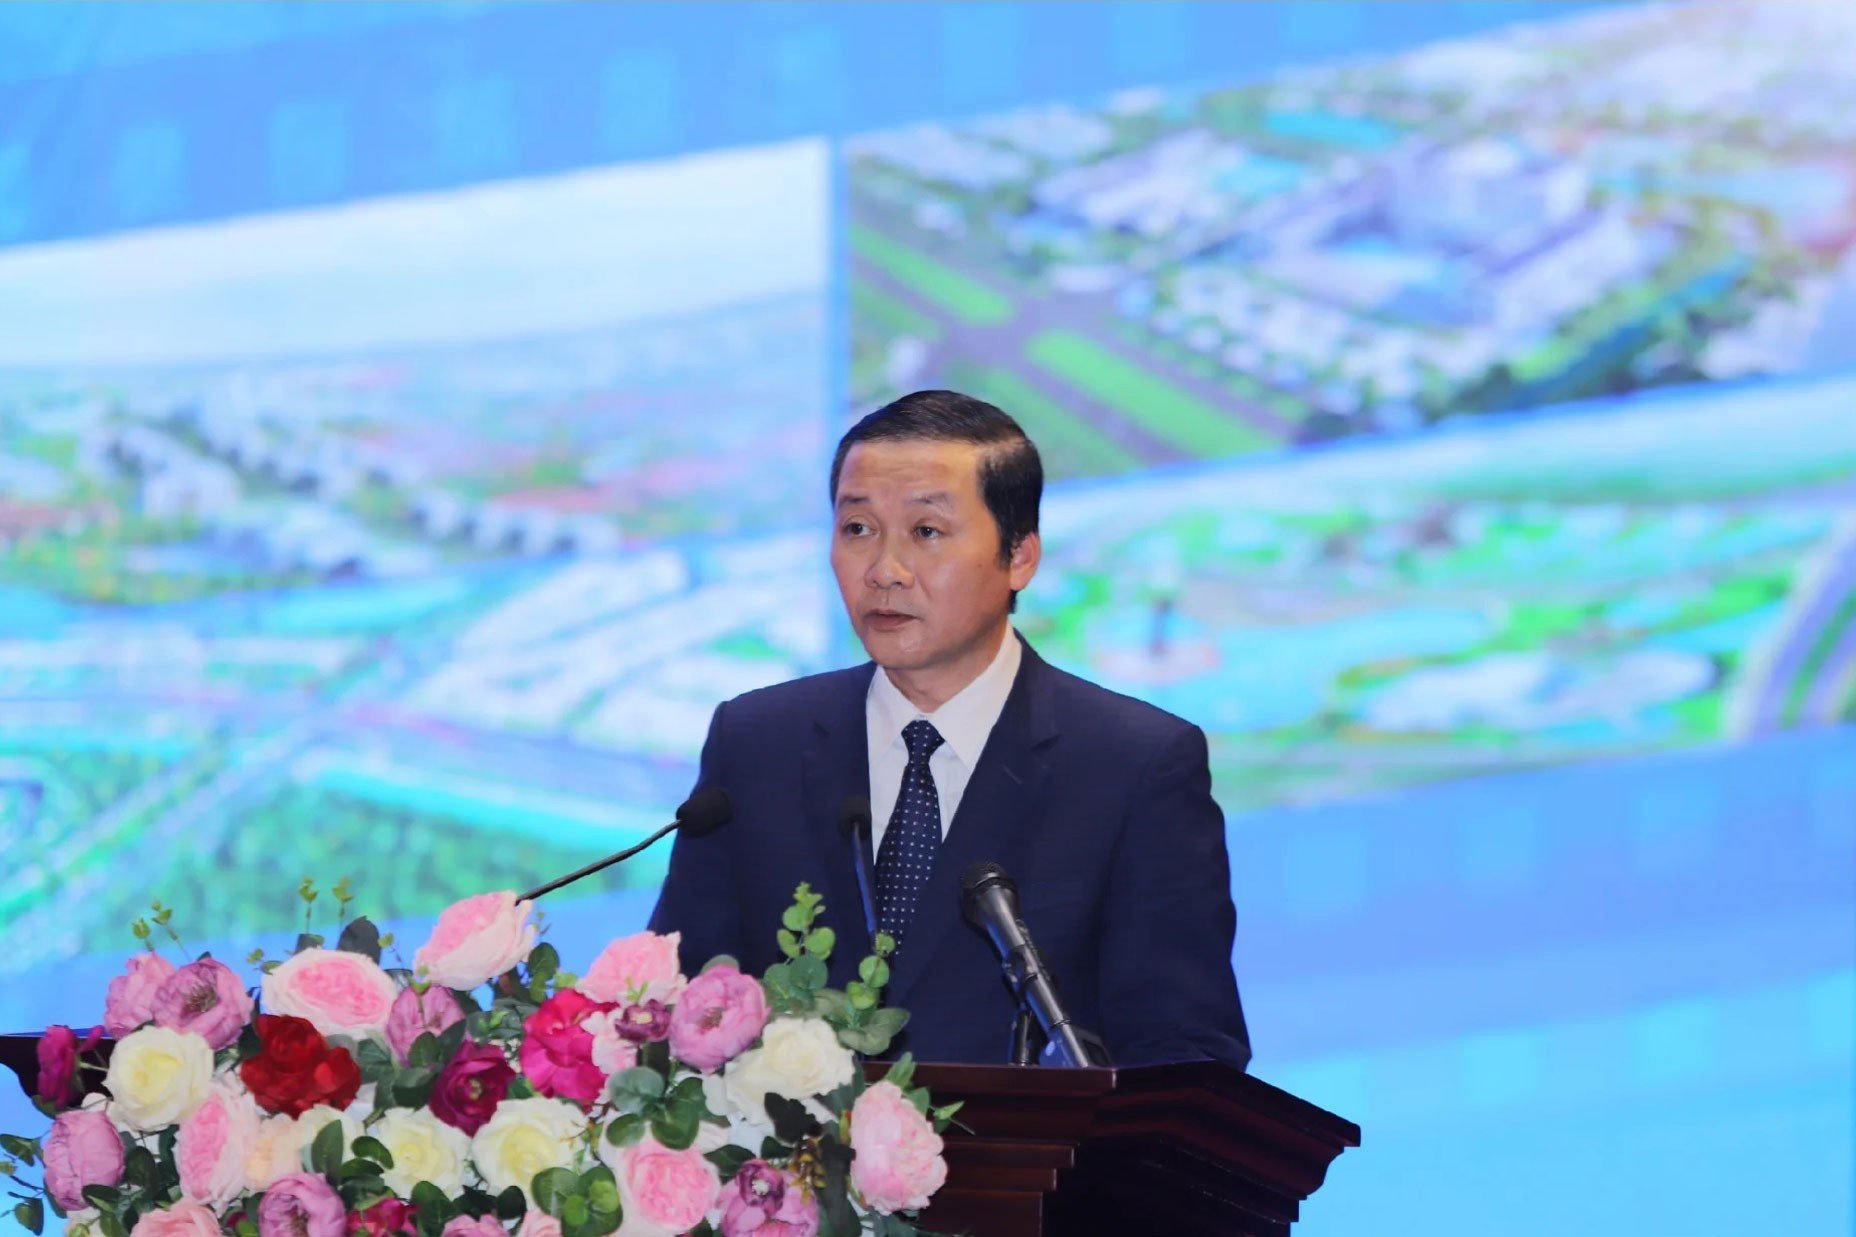 Bài phát biểu của Chủ tịch UBND tỉnh tại Hội nghị công bố quy hoạch chung đô thị Thanh Hóa, tỉnh Thanh Hóa đến năm 2040 - Ảnh 1.